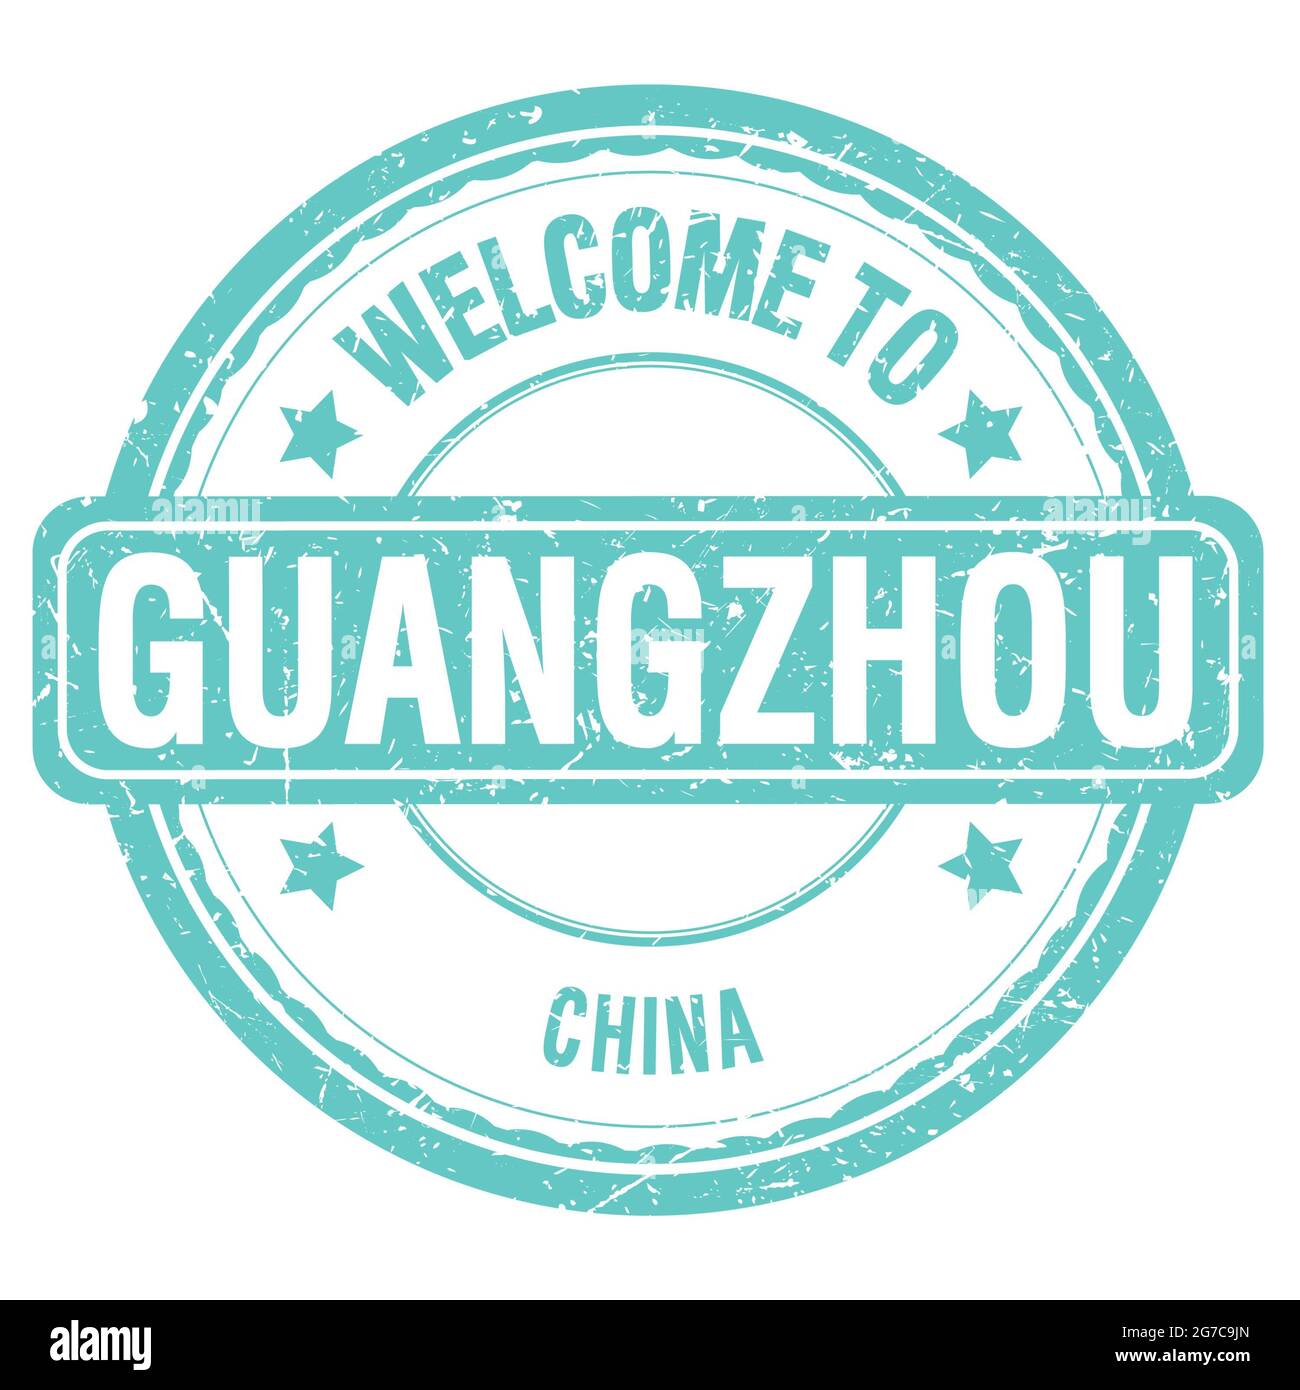 BIENVENUE À GUANGZHOU - CHINE, mots écrits sur timbre grungy turquoise Banque D'Images